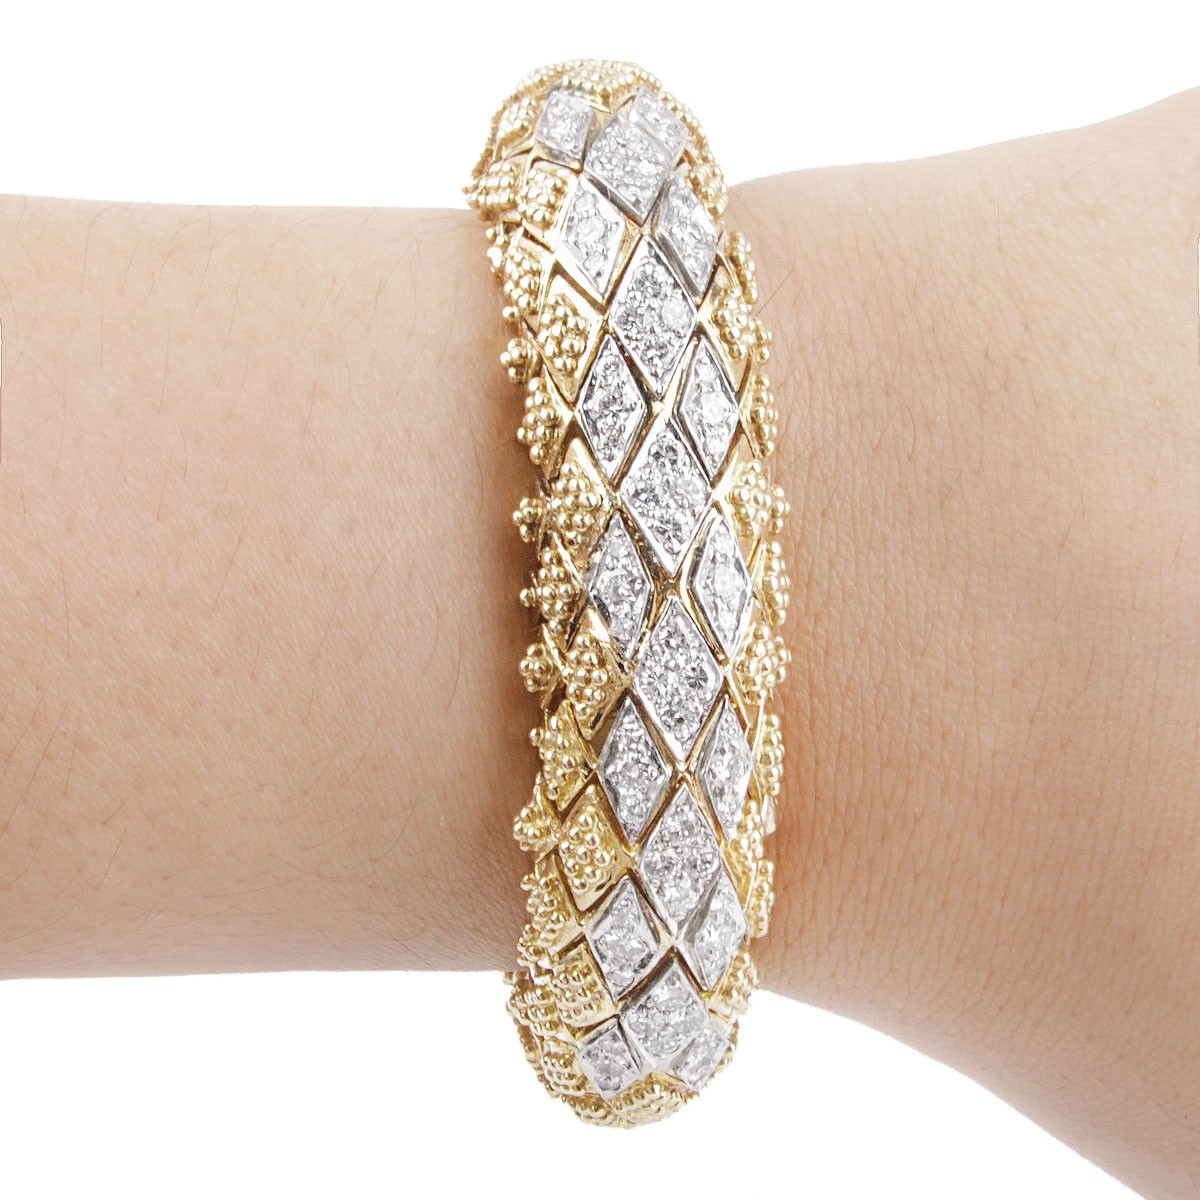 Vintage Diamond and 18K Gold Bracelet Watch